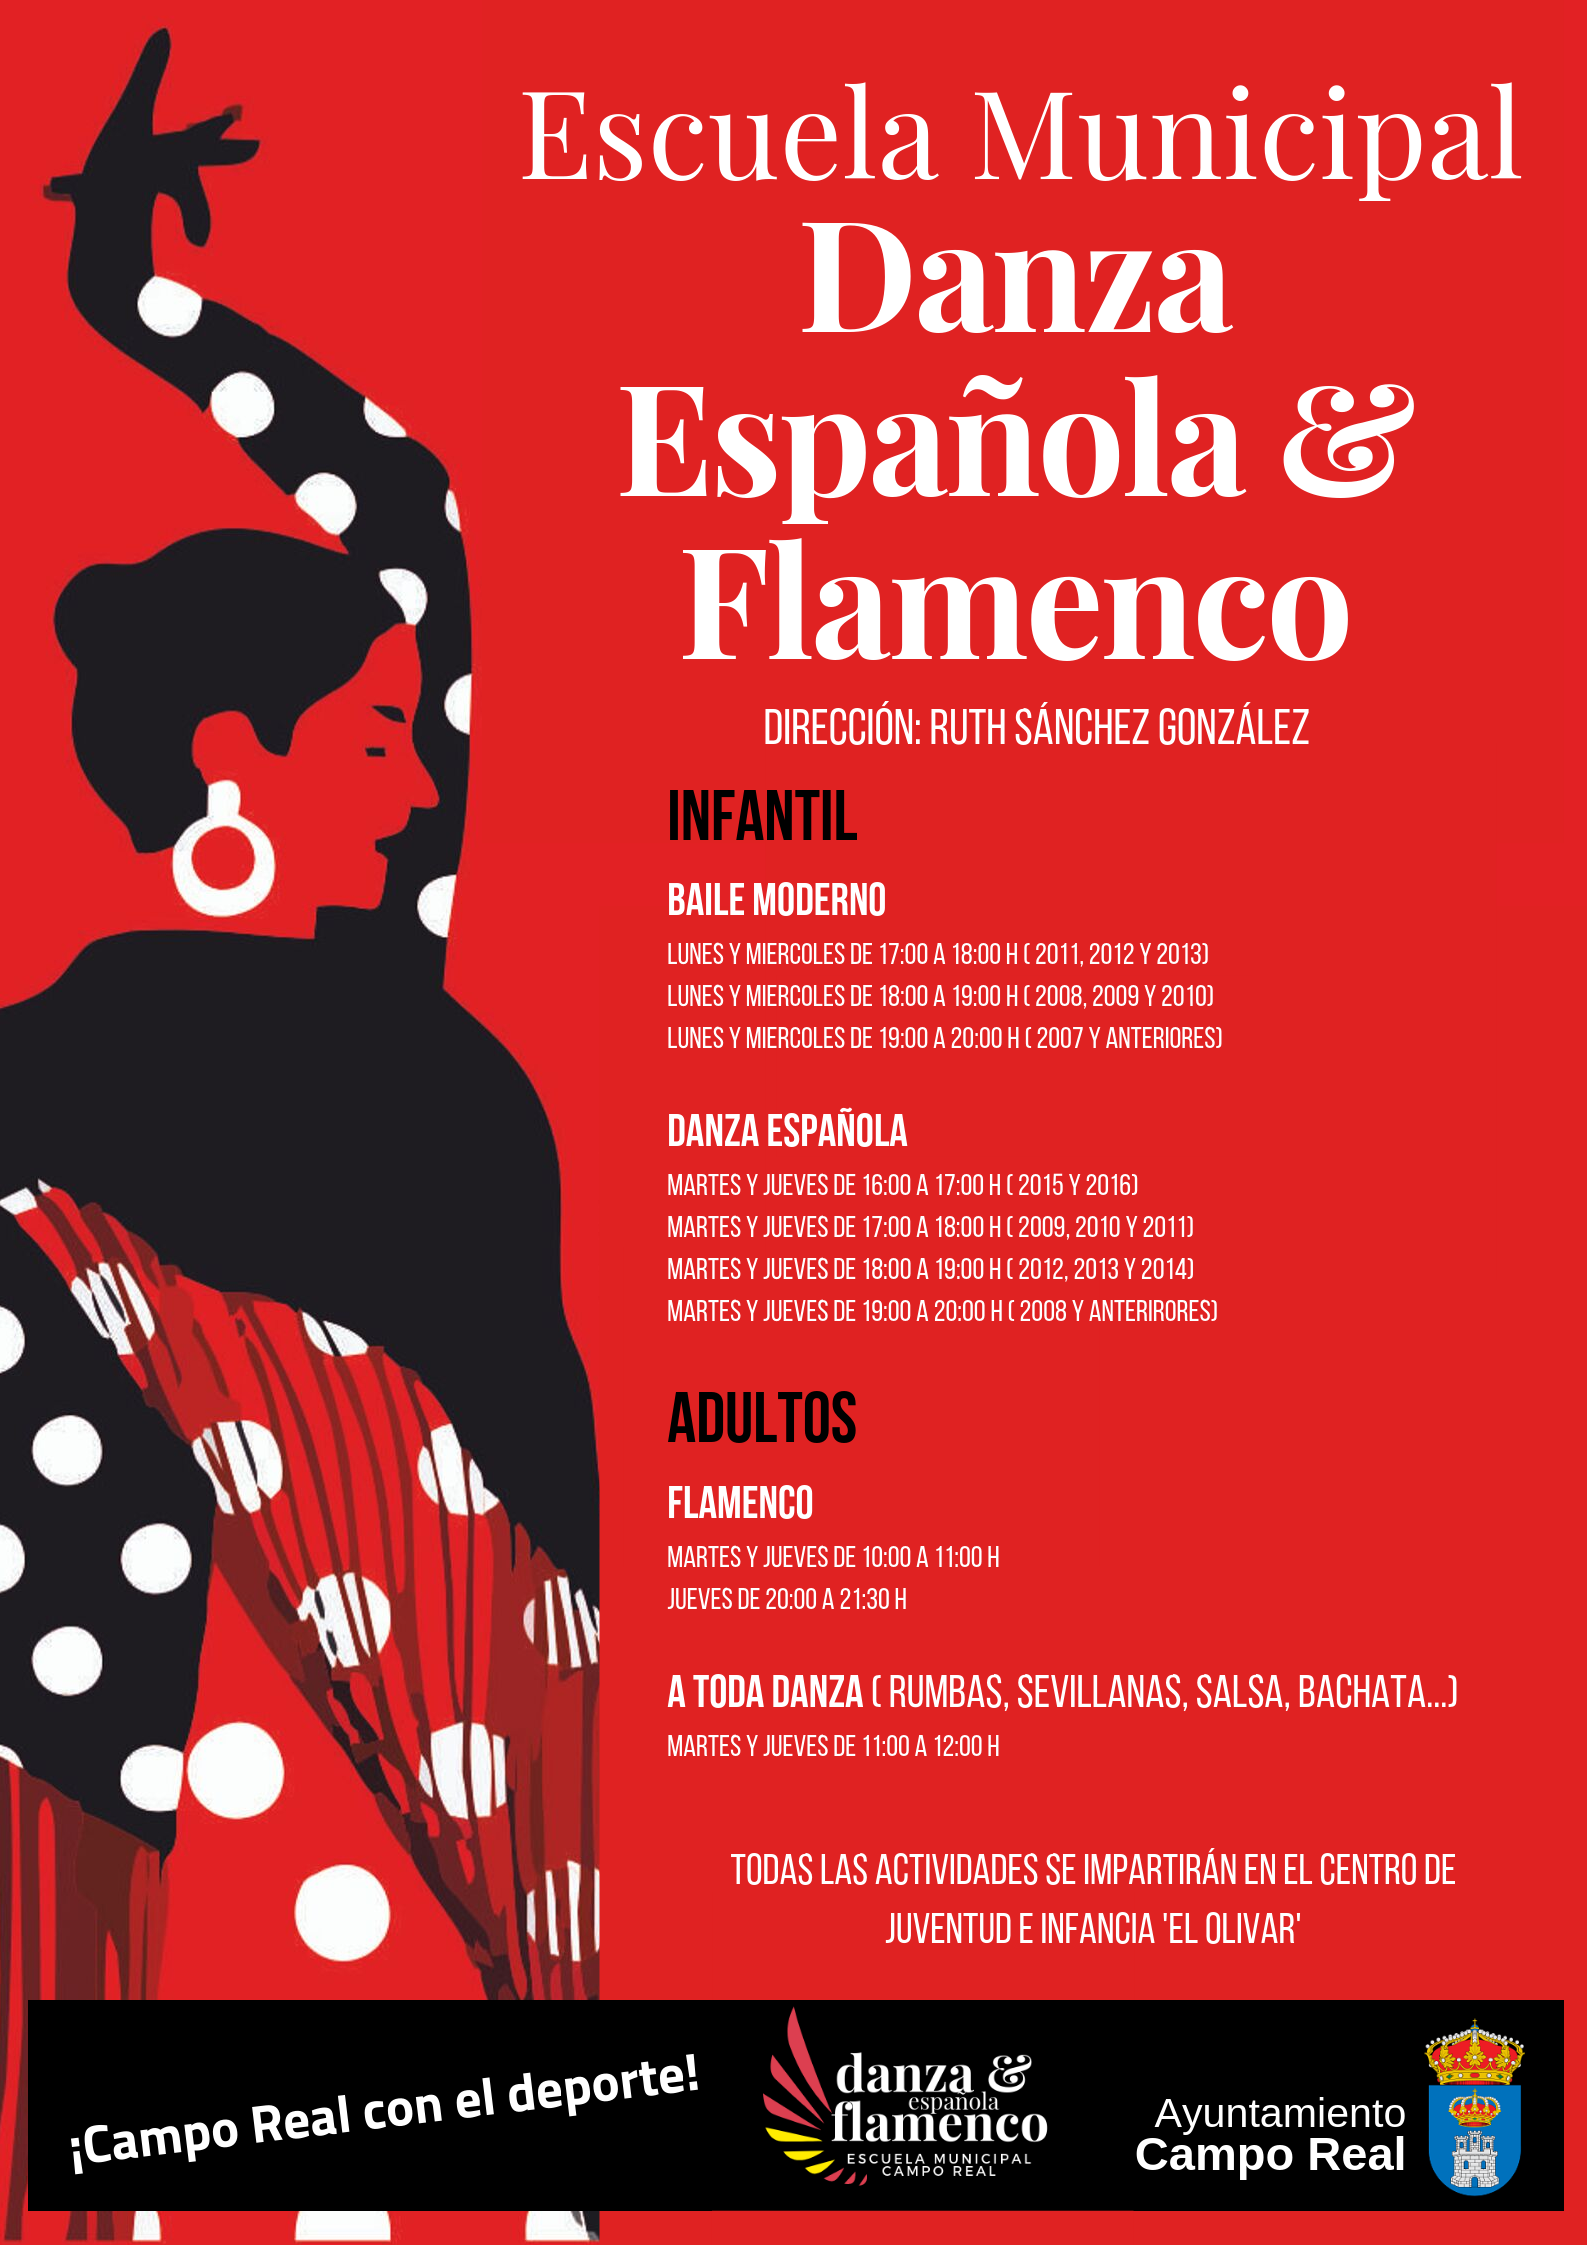 flamenco_cr19_horarios.png - 1,012.96 kB